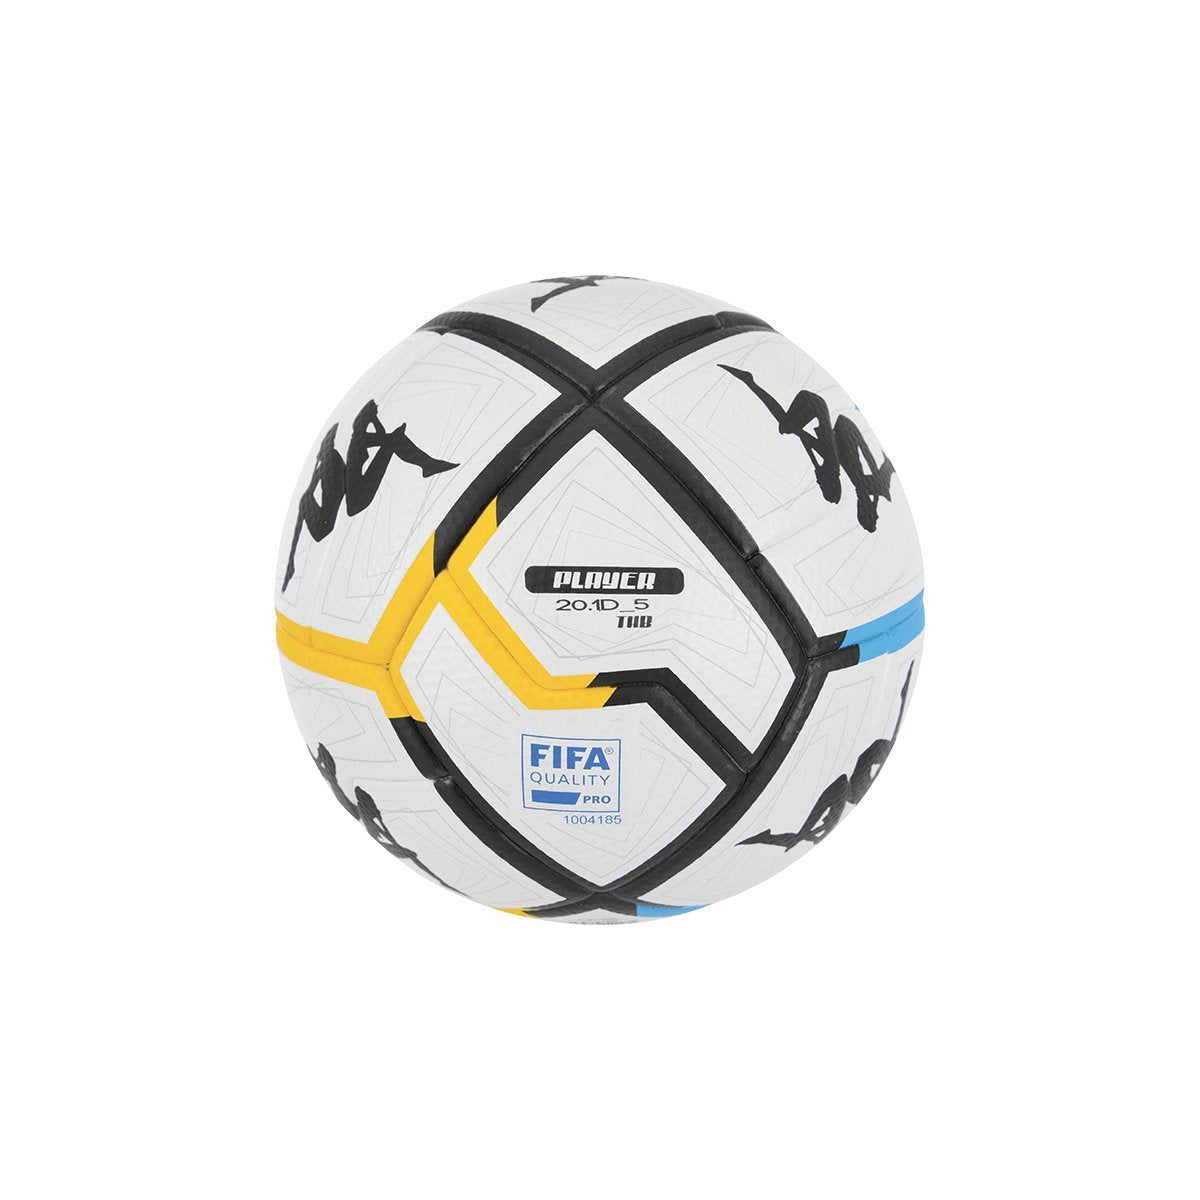 Balón de fútbol Player 20.1 Unisex Blanco - Imagen 1